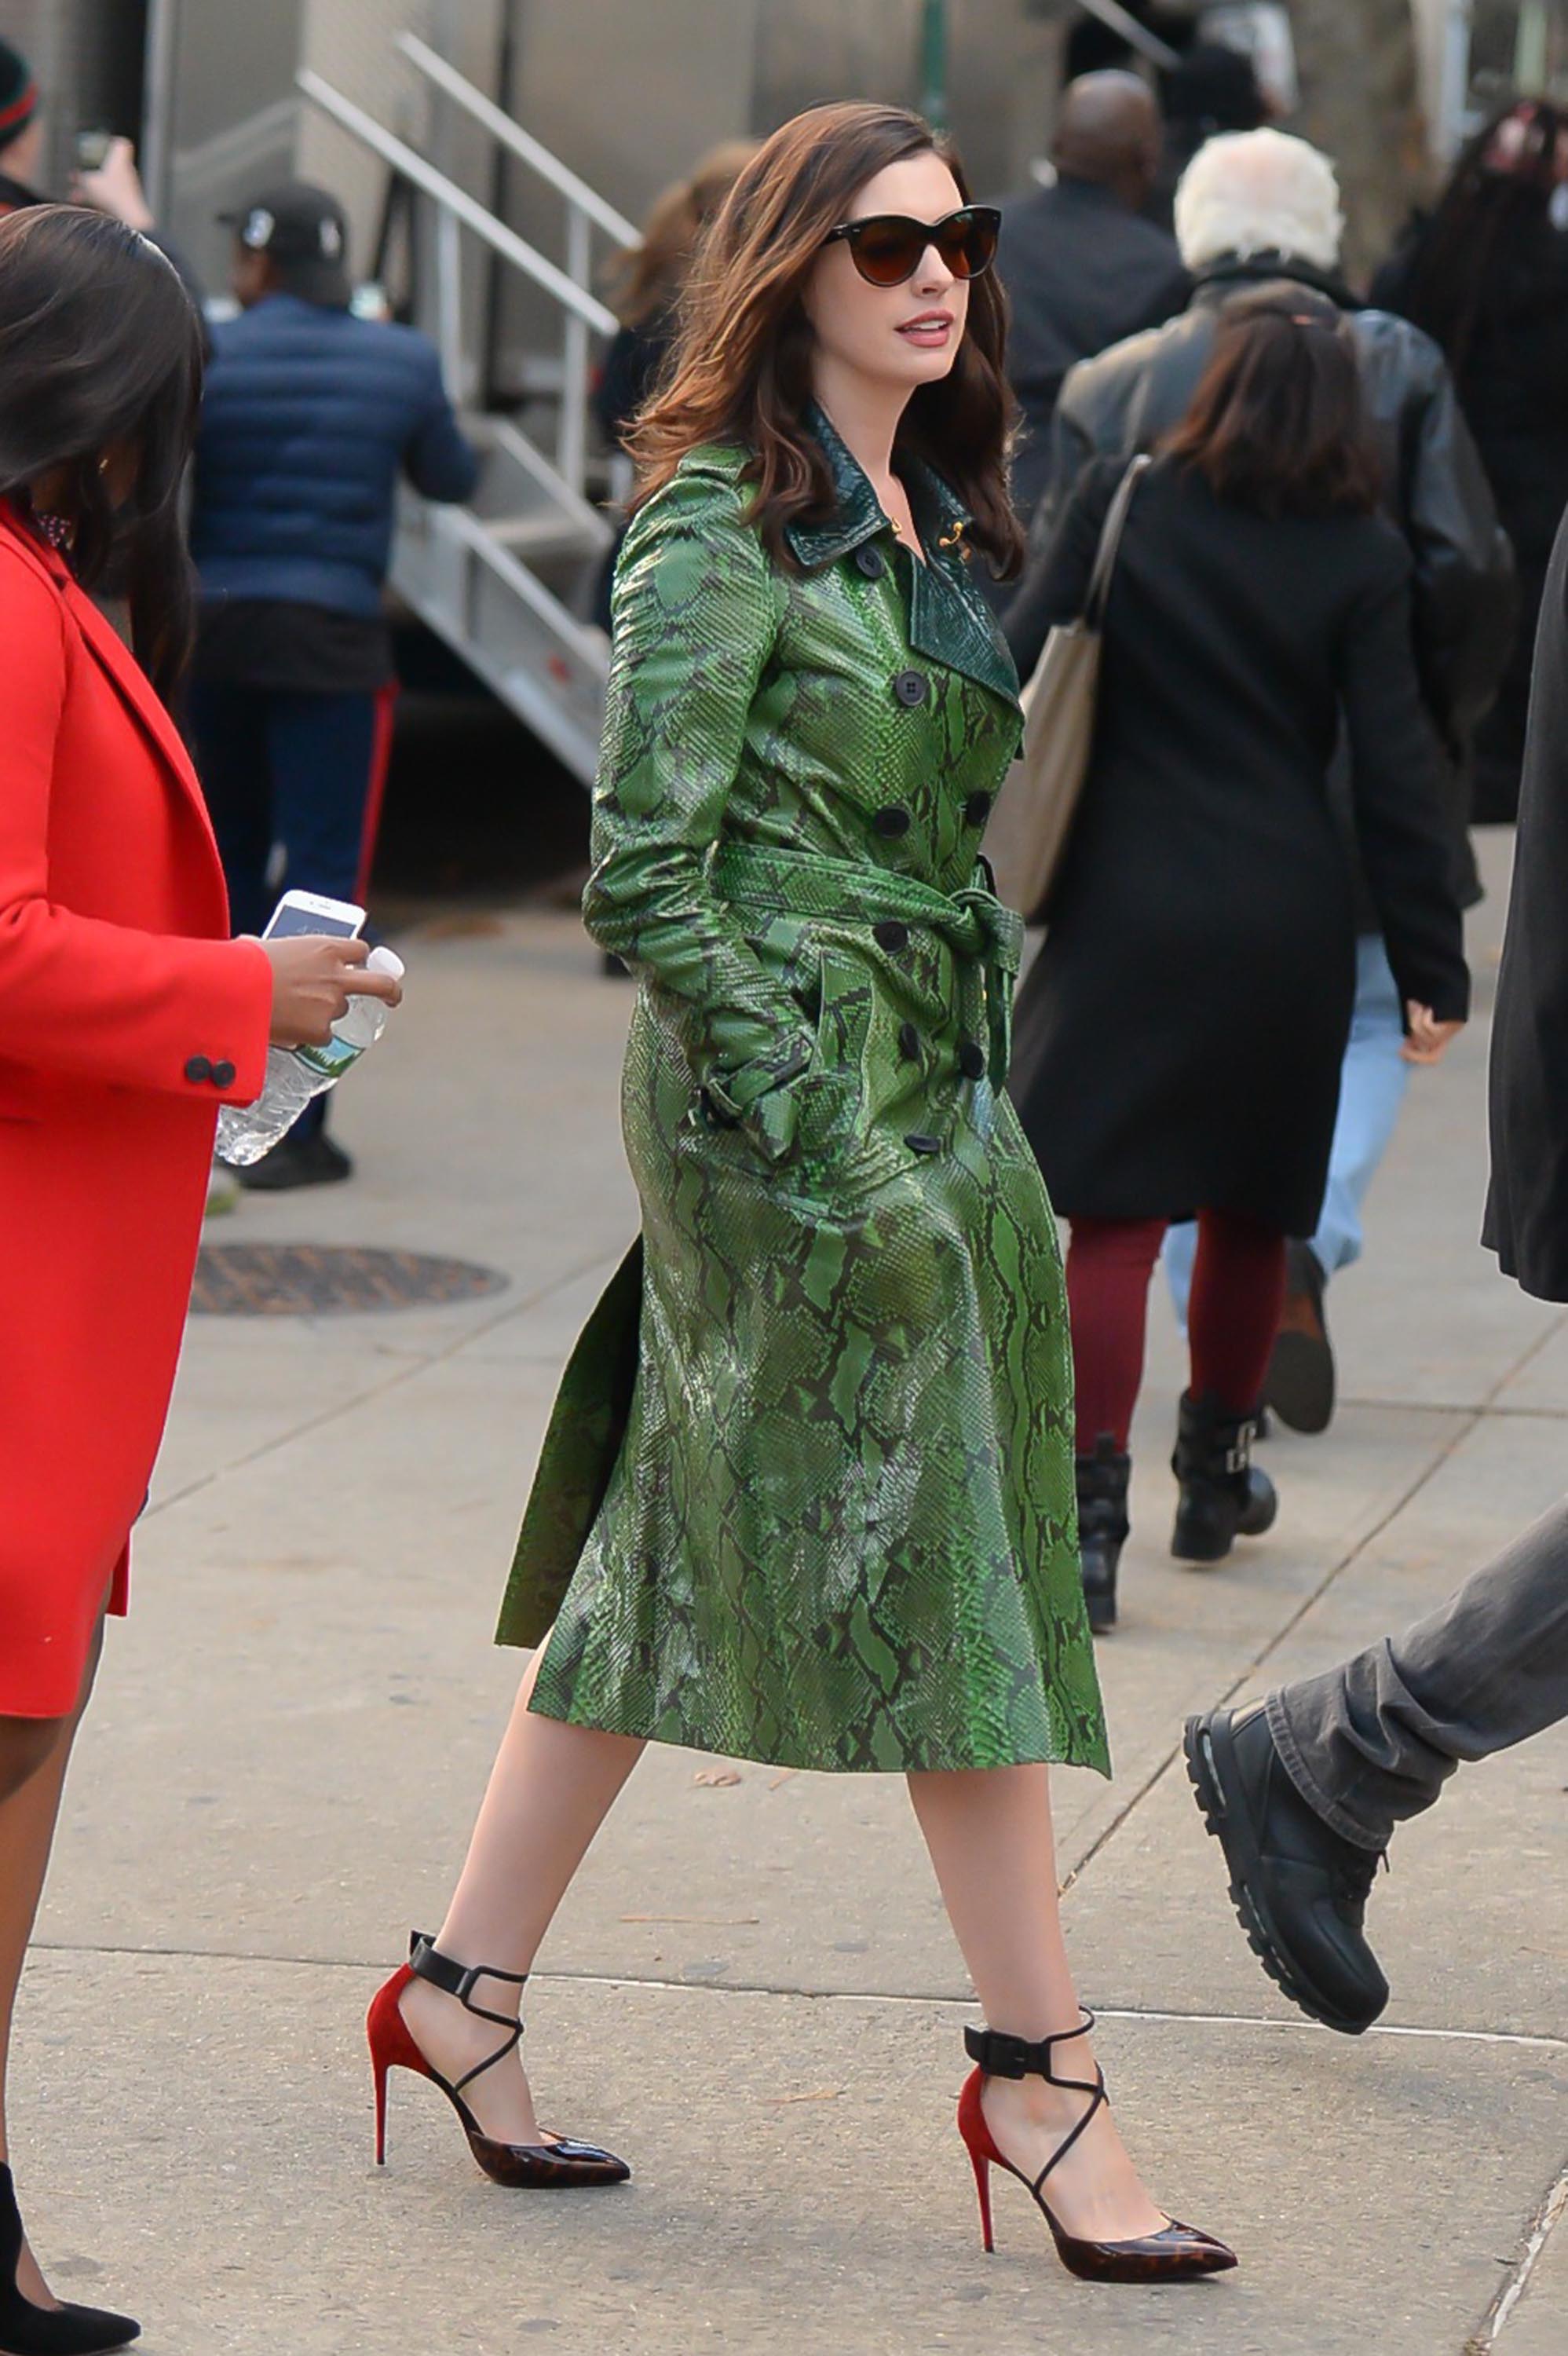 Anne Hathaway is seen filming Ocean’s